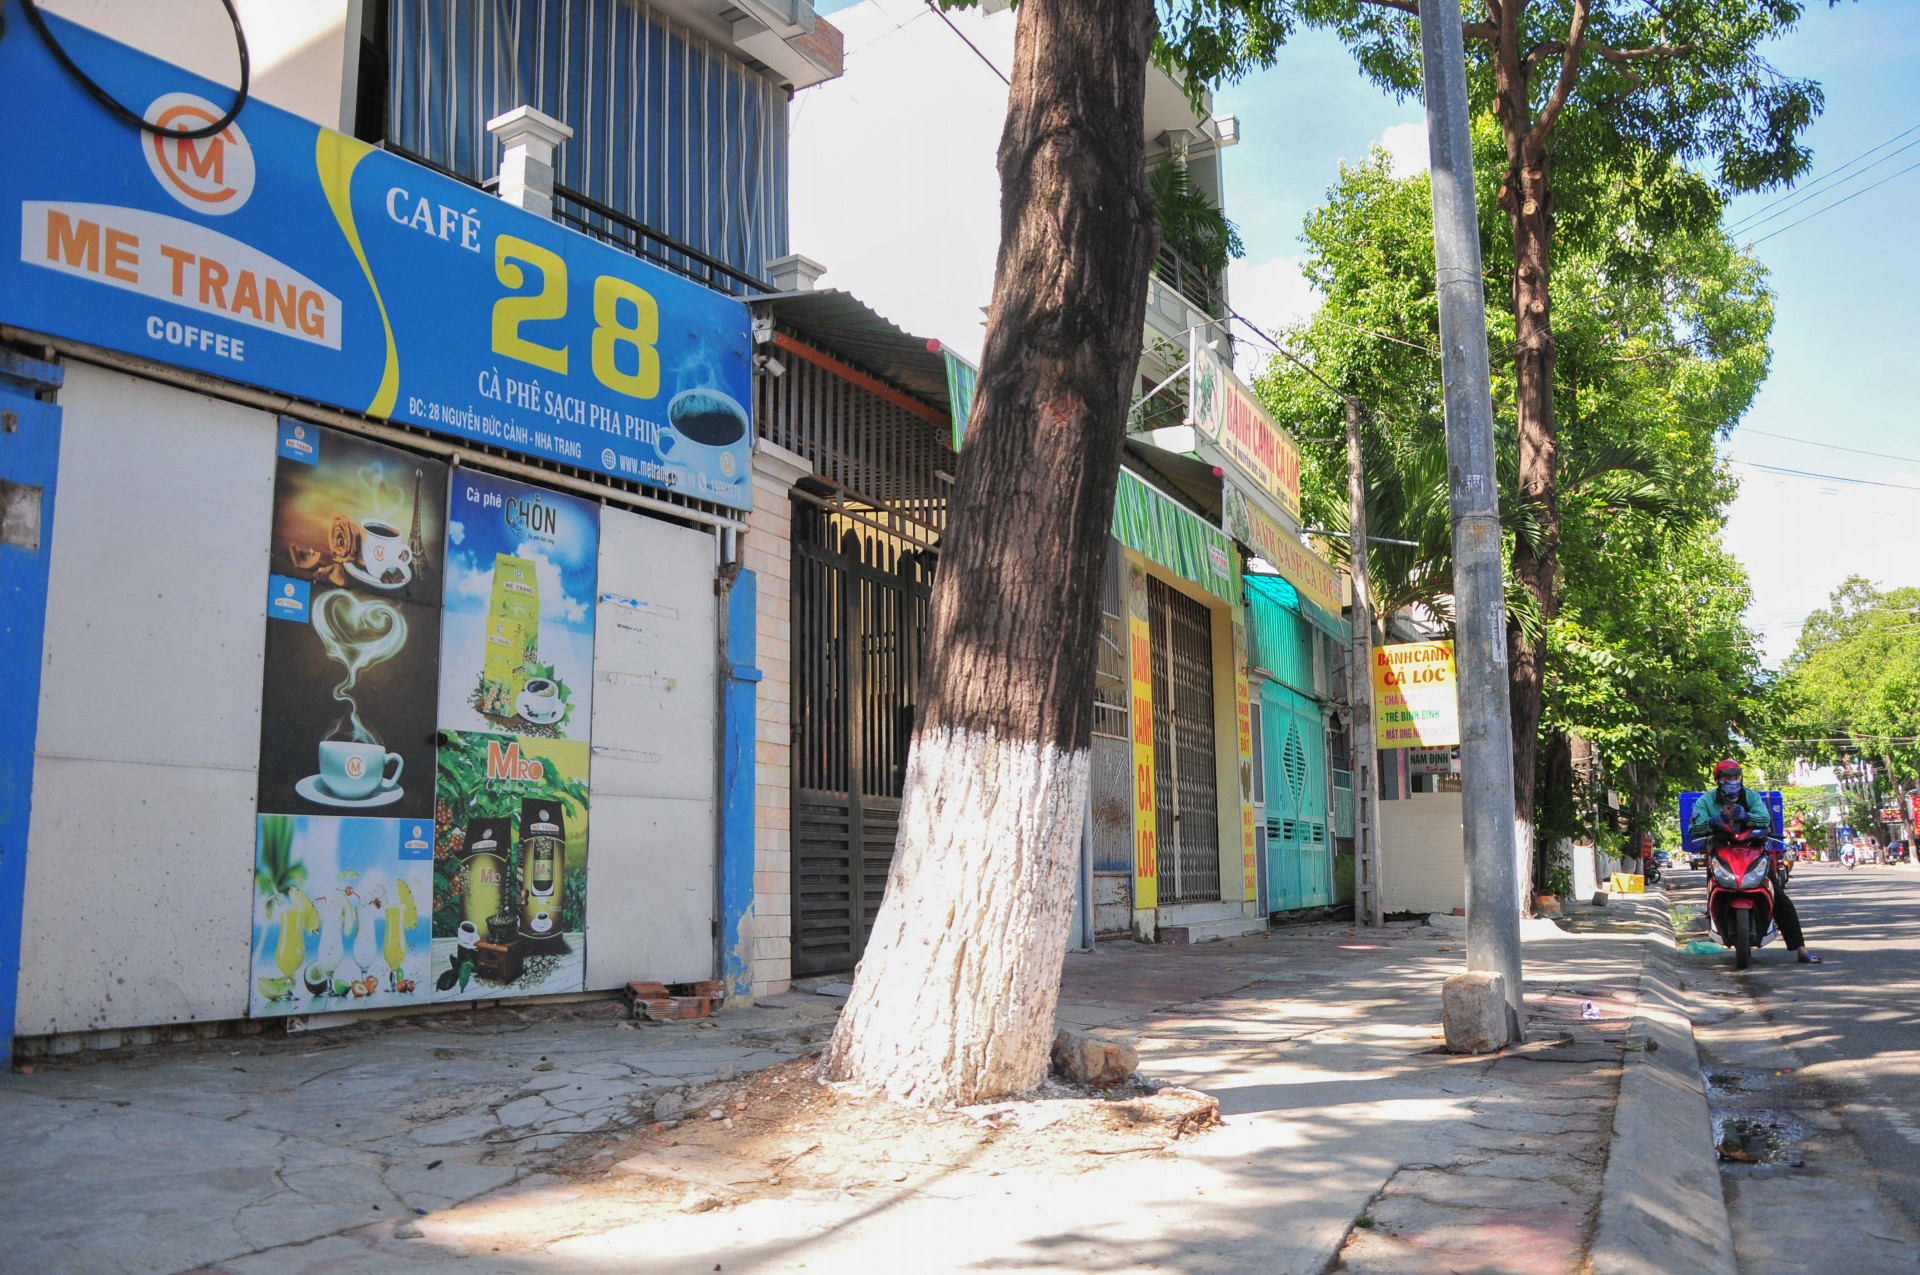 Đường Nguyễn Đức Cảnh vốn nhộn nhịp với nhiều hàng ăn, quán cà phê, thì nay cũng vắng lặng do các cửa hàng đều tạm đóng cửa 